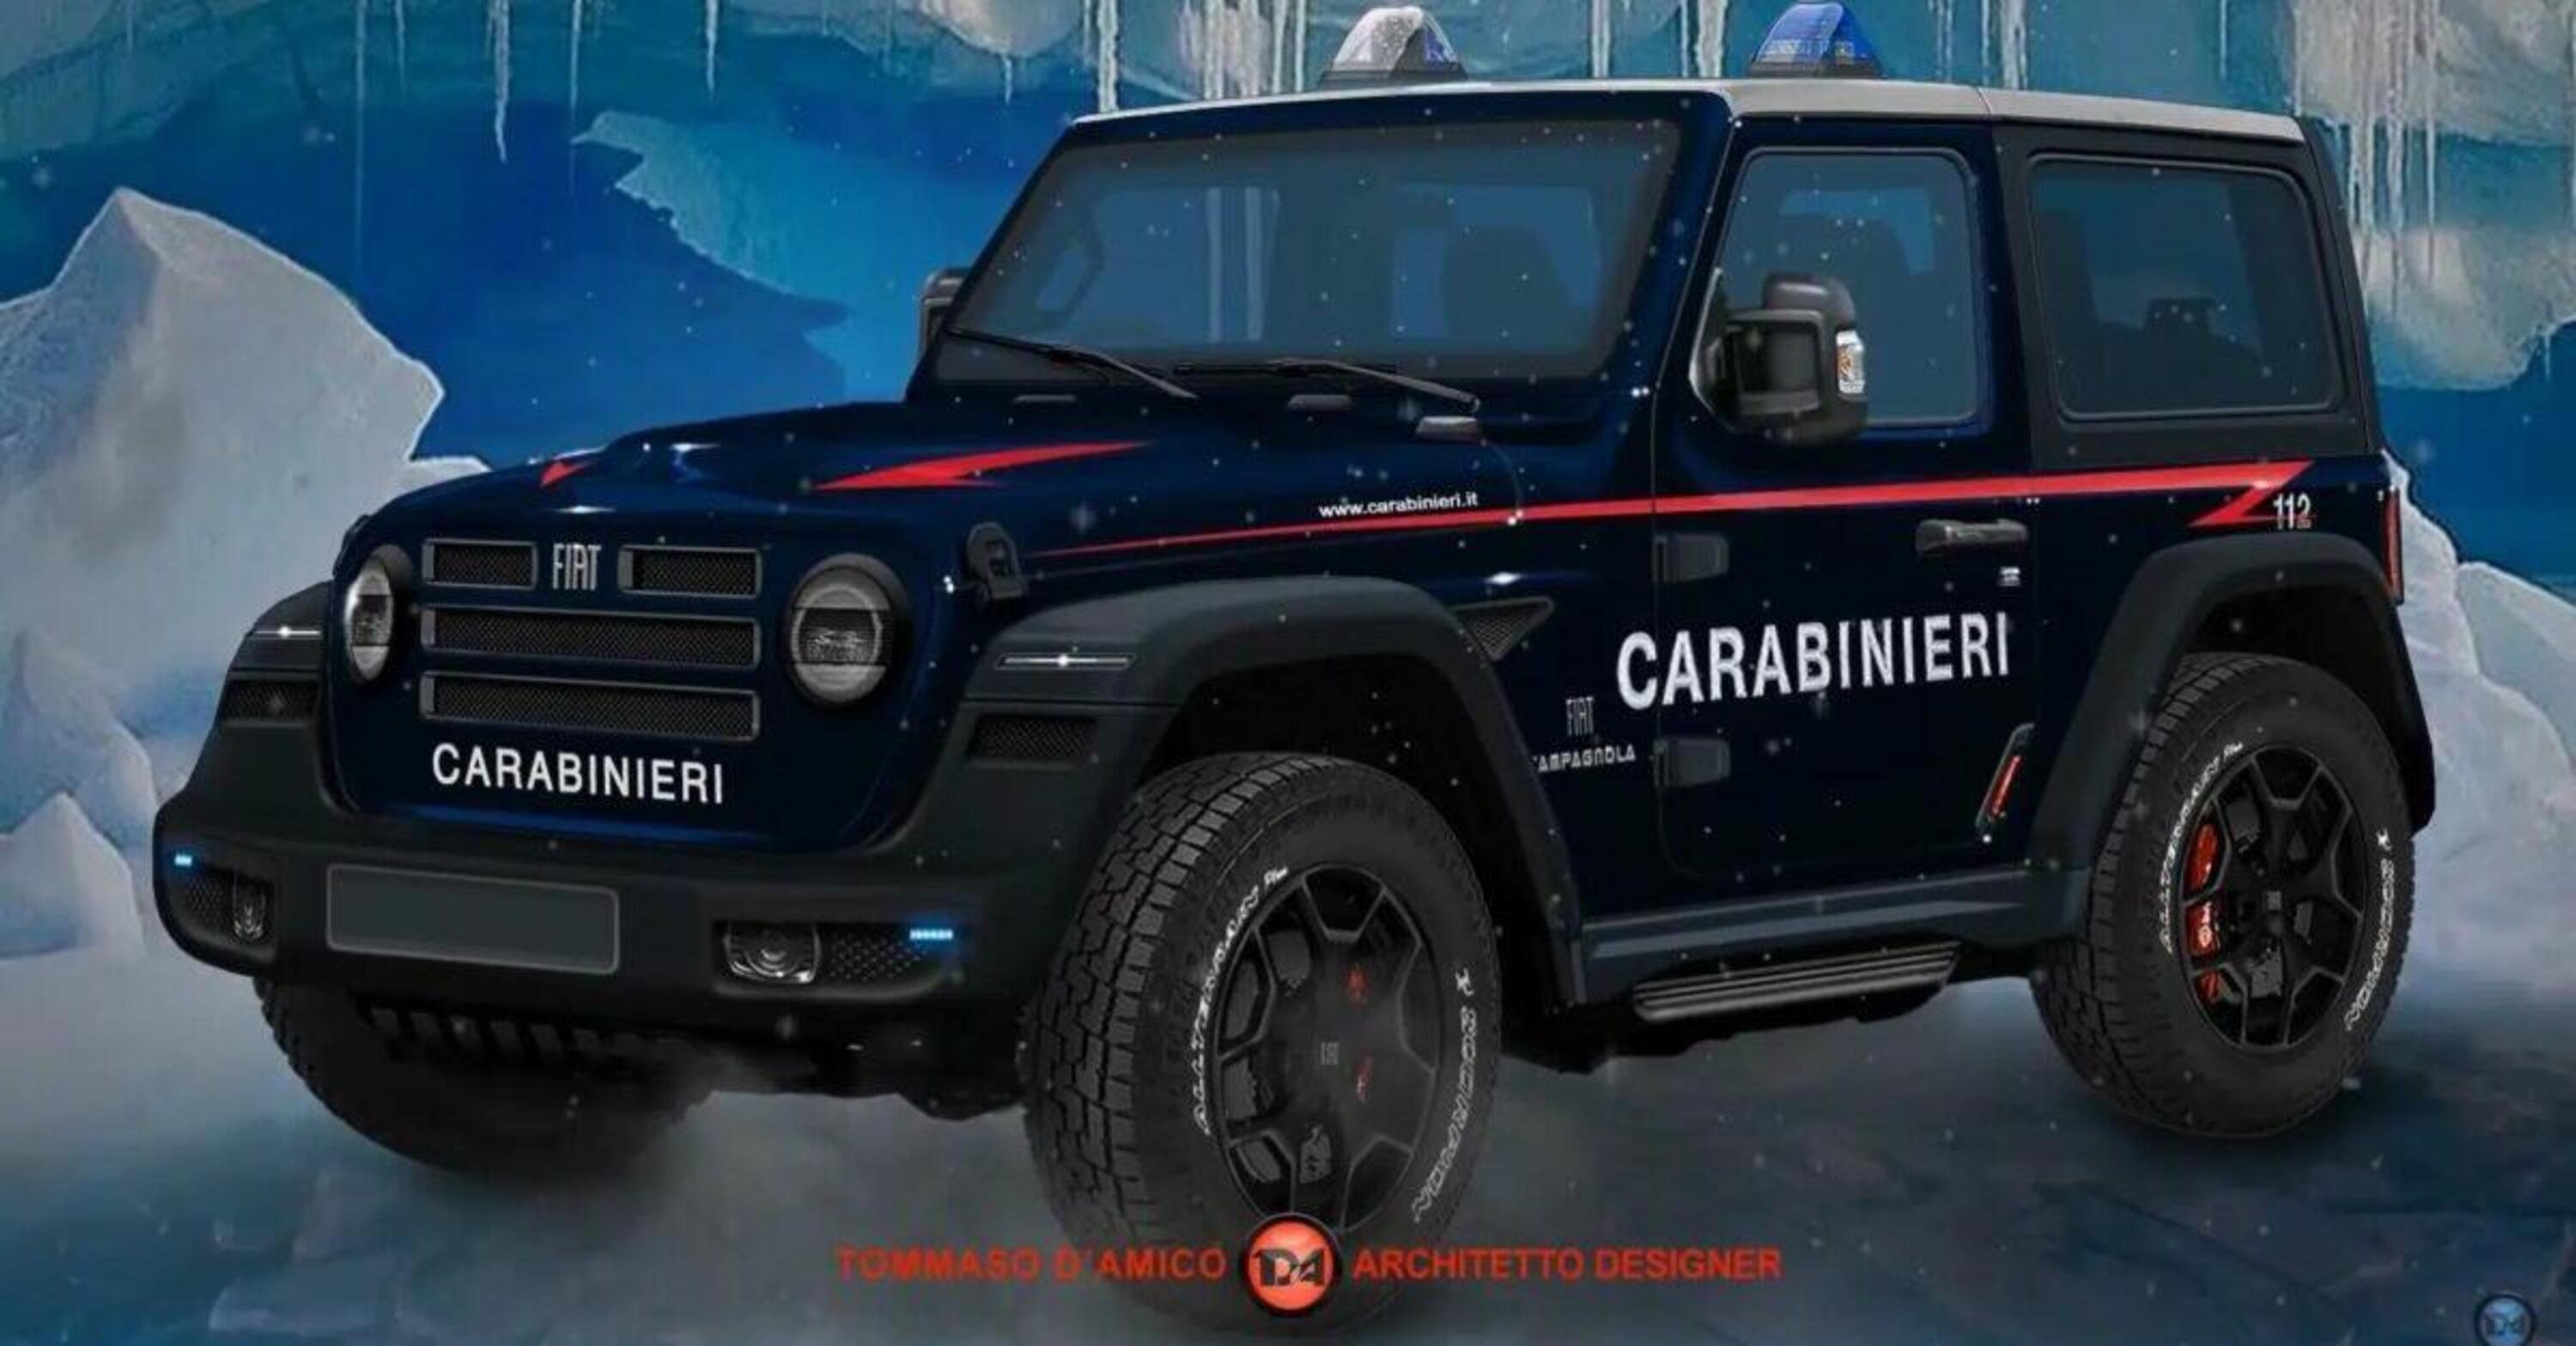 Quando Stellantis approva la nuova Fiat Campagnola: versione Carabinieri inclusa